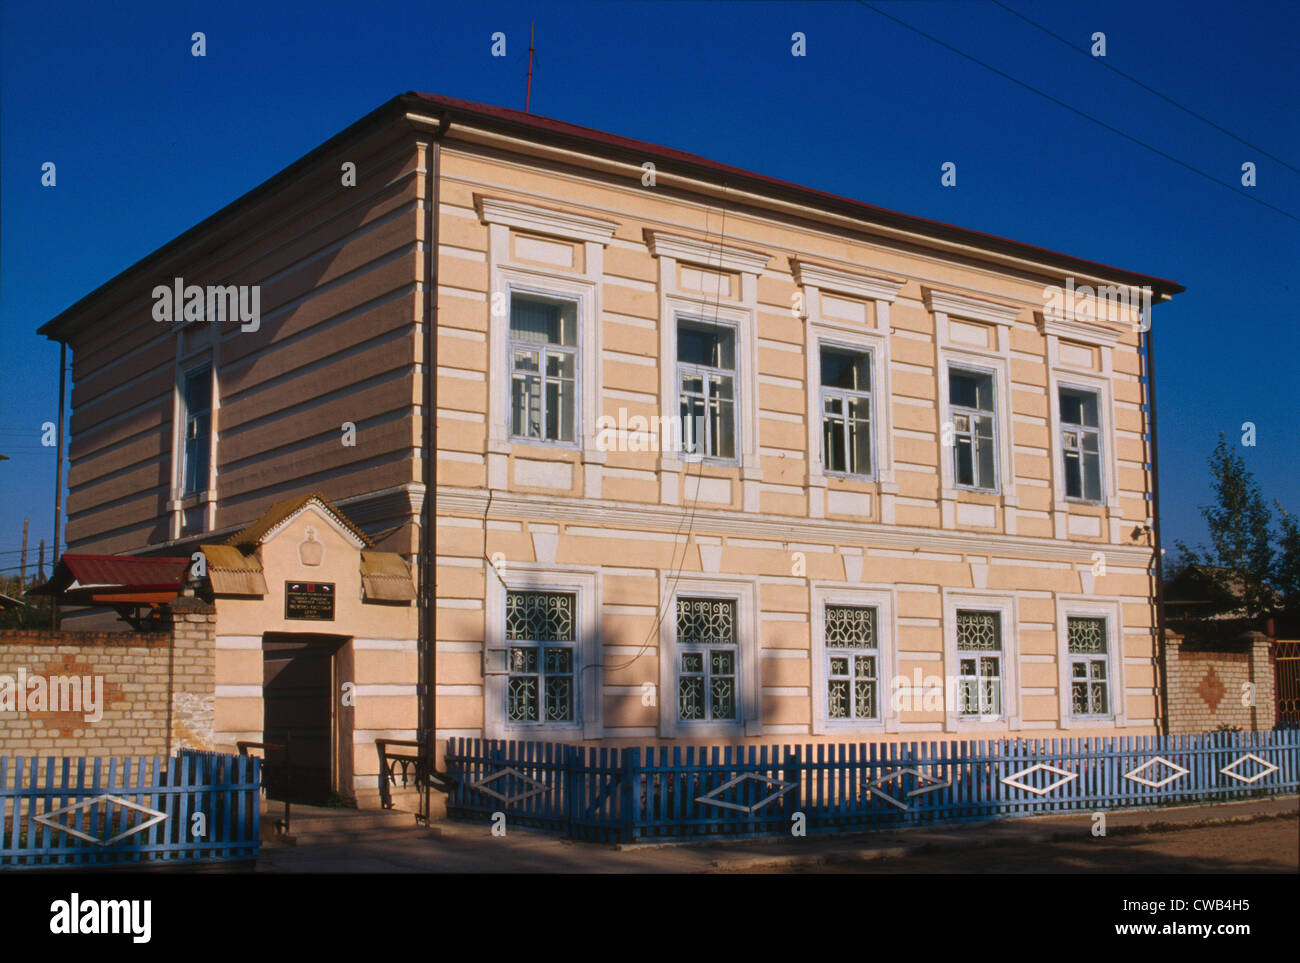 Russische Post Office, erbaut Mitte des 19. Jahrhunderts, Zollstation, Russland, Foto von William Handwerk Brumfield, 2000. Stockfoto